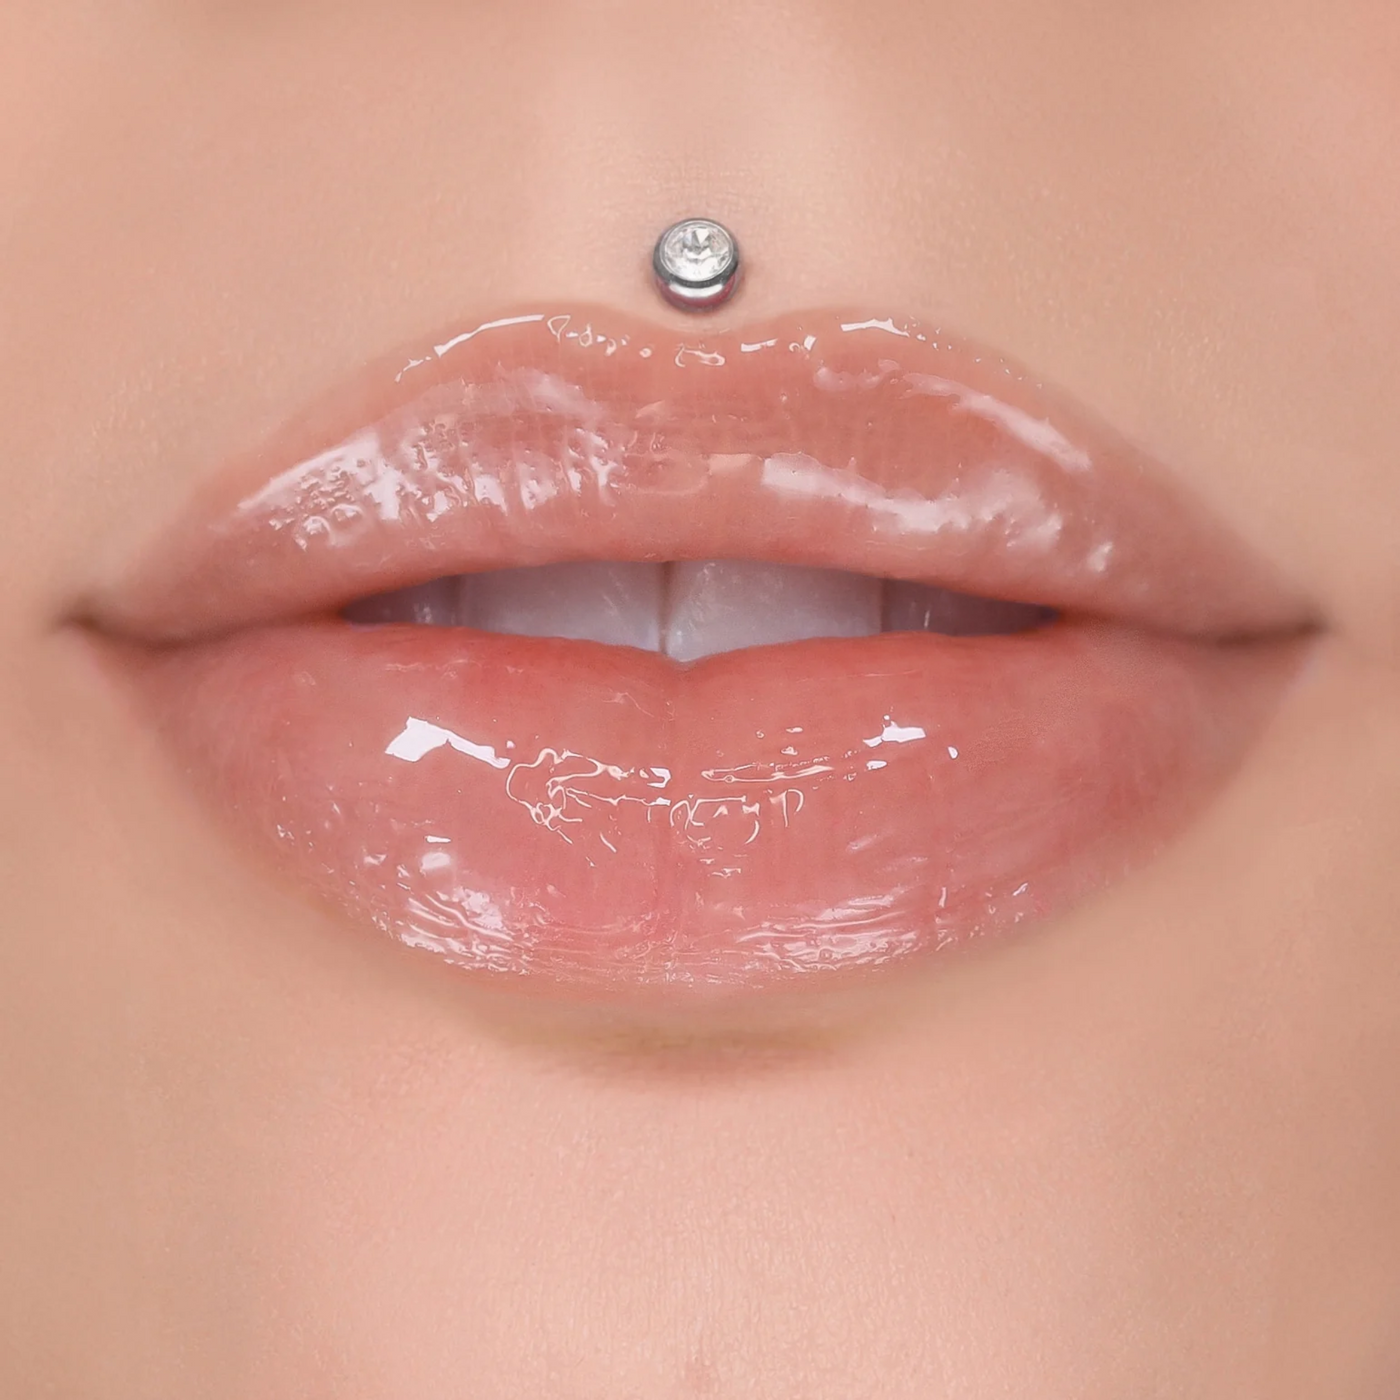 Jeffree Star Cosmetics - Liquid Lip Balm